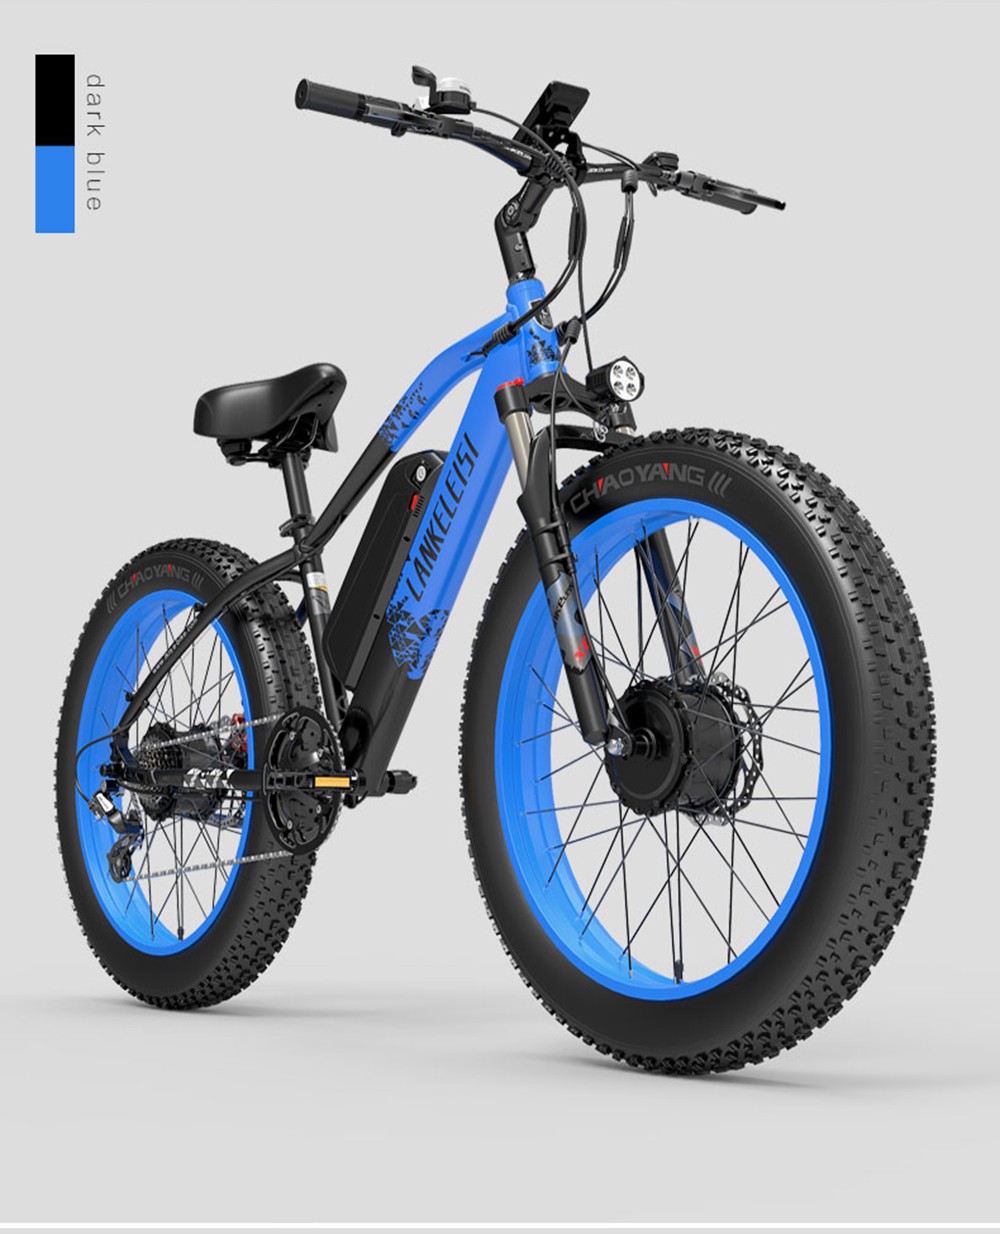 https://img.gkbcdn.com/s3/d/202209/LANKELEISI-MG740-PLUS-Electric-Bike-Black---Blue-516947-21.jpg